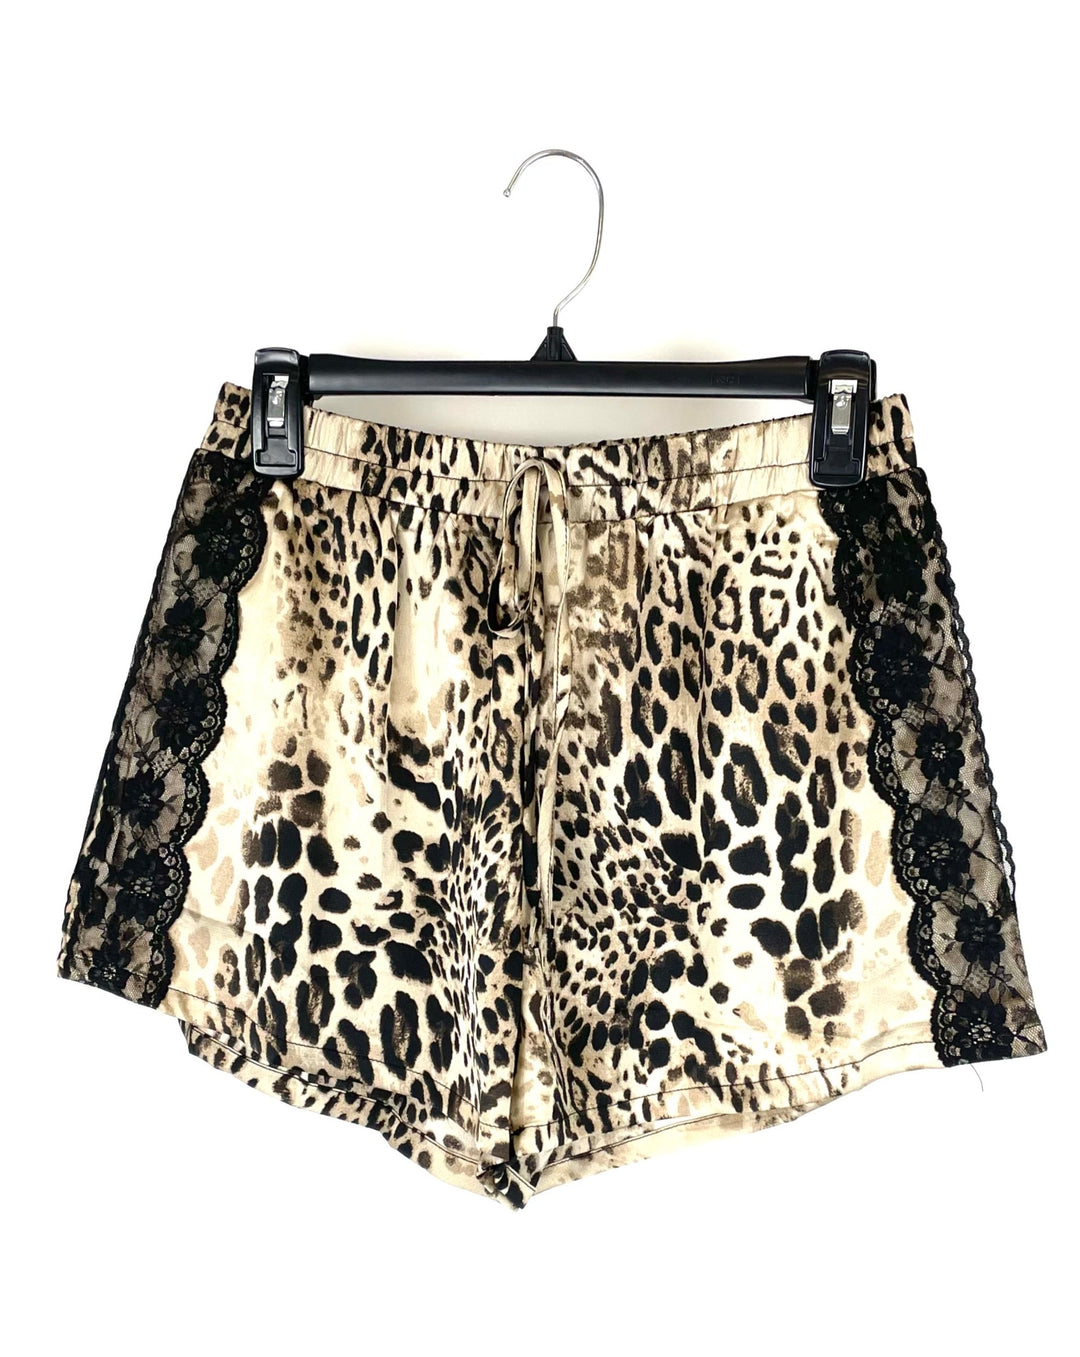 Brown Cheetah Shorts - Small, Medium